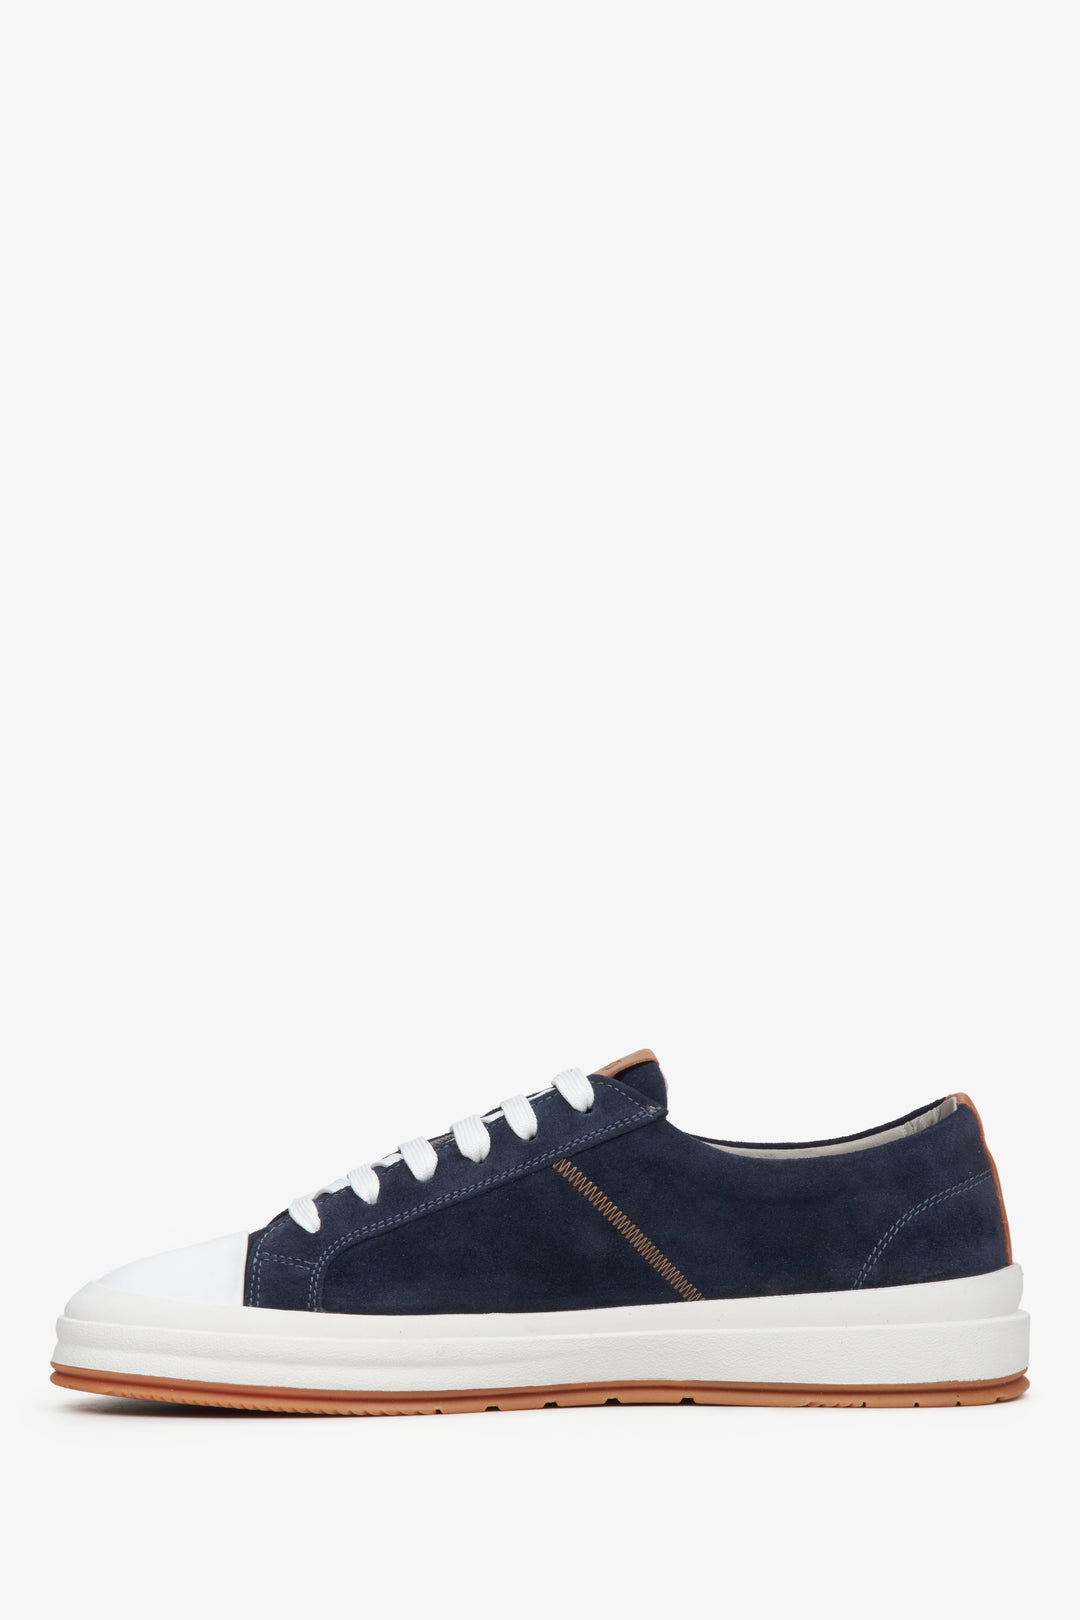 Men's navy blue velour sneakers by Estro - shoe profile.